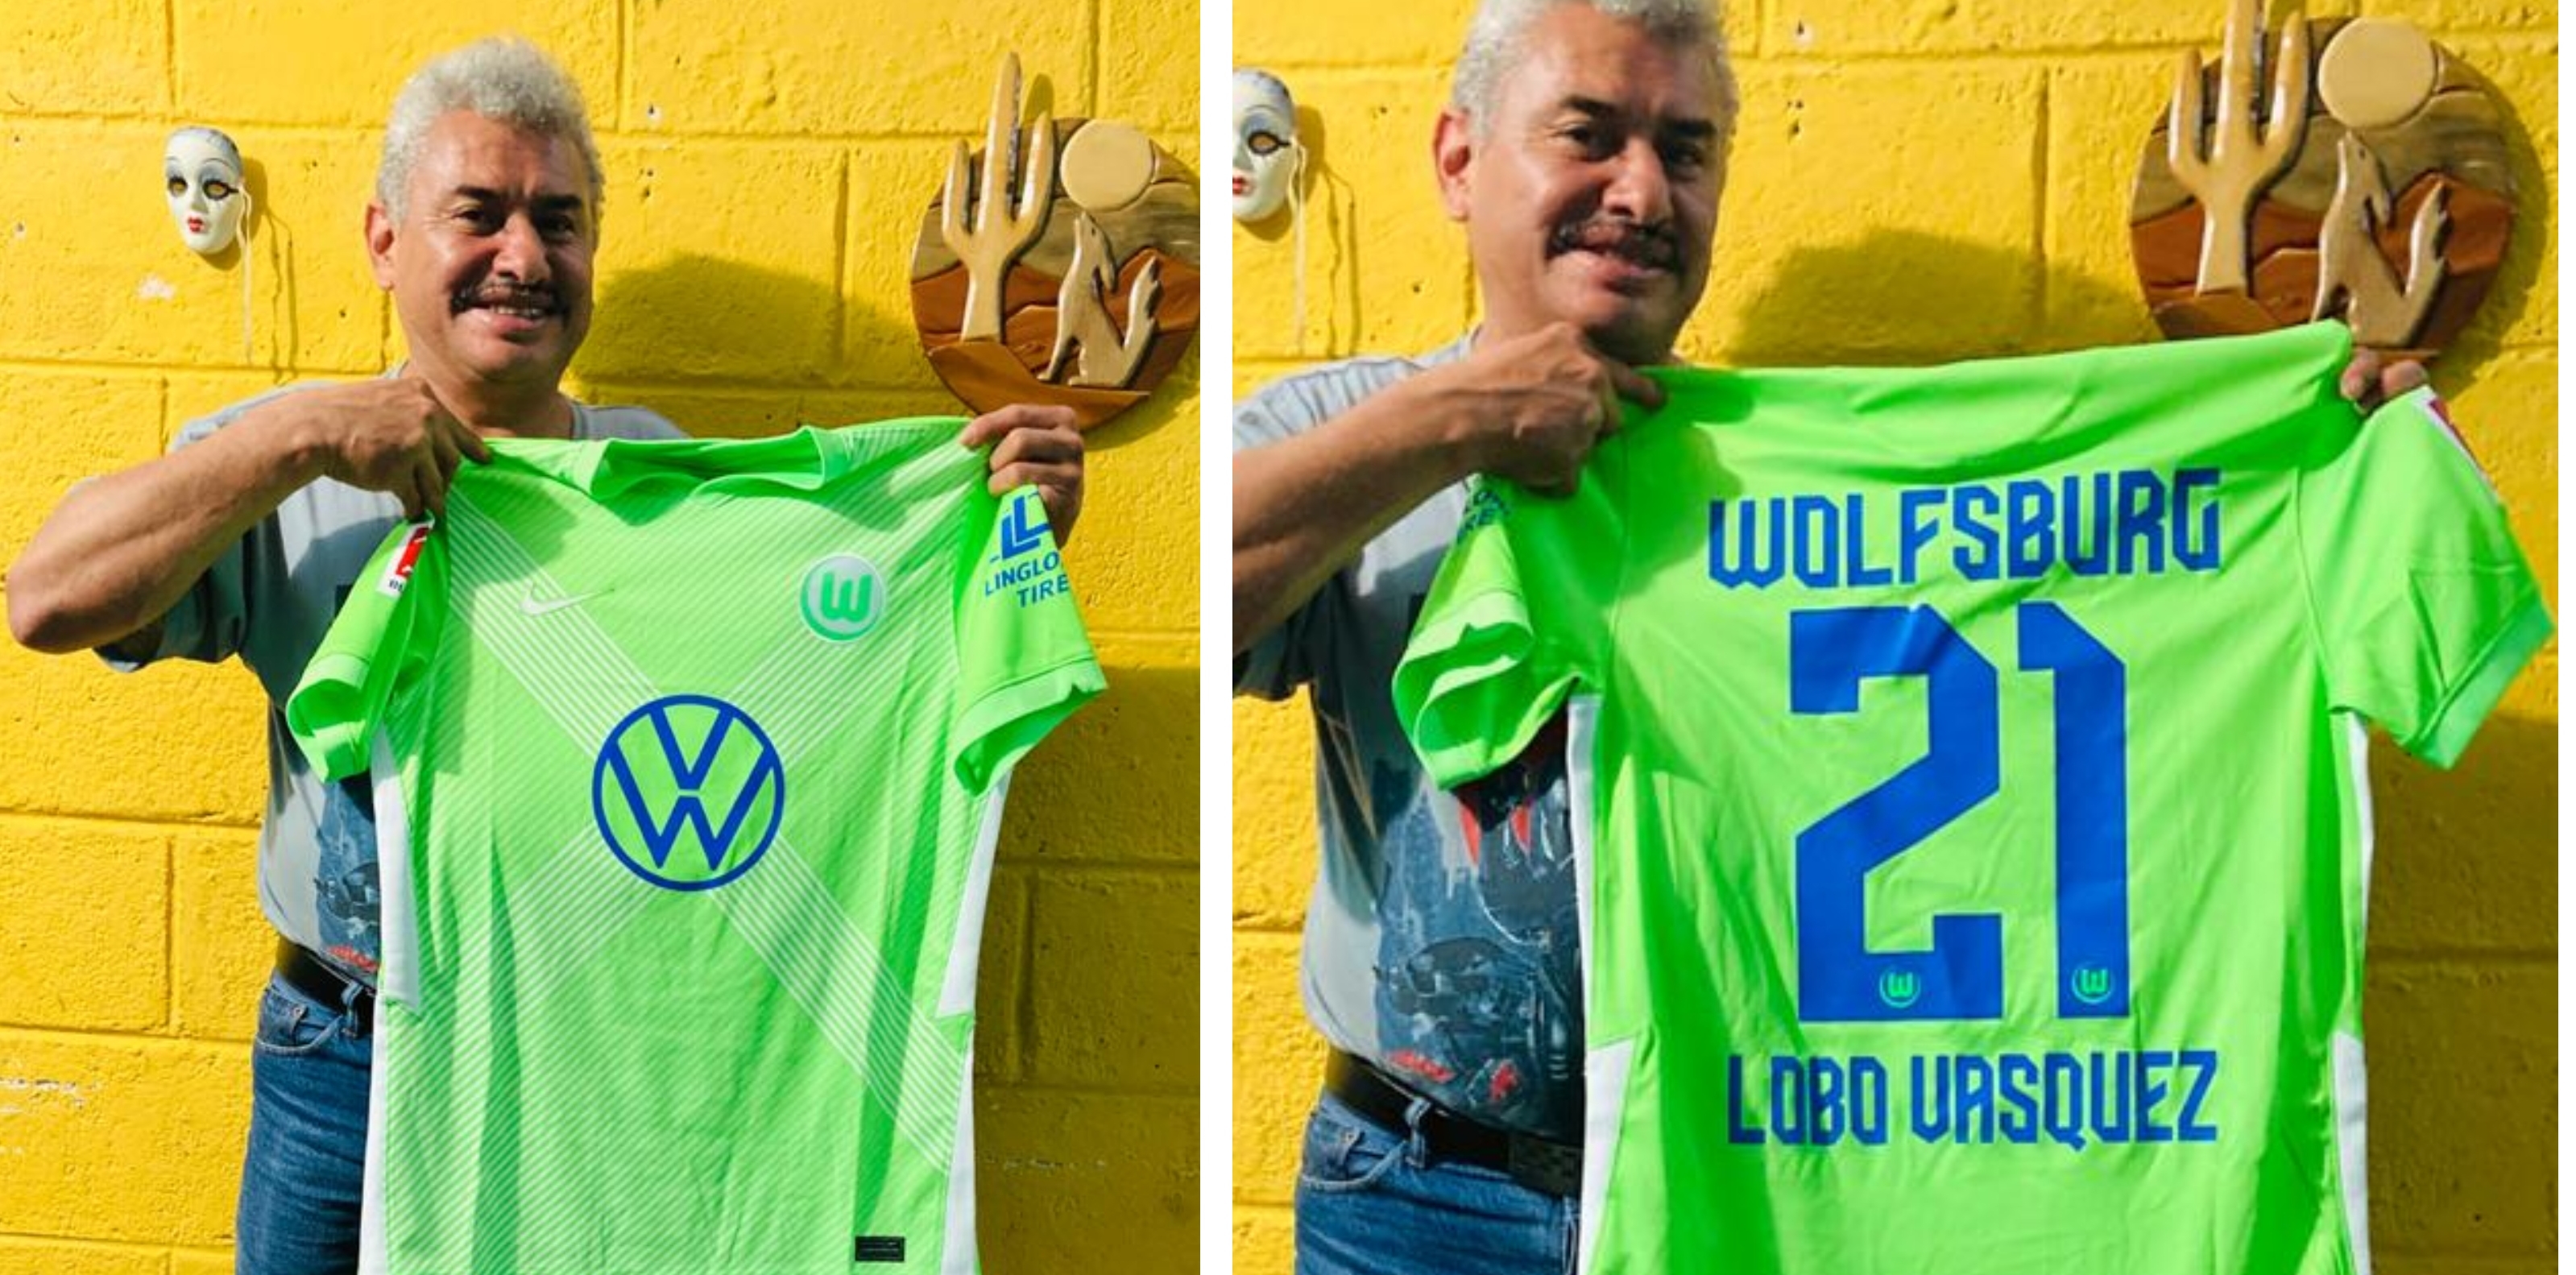 El "Lobo" Vásquez recibe un regalo especial desde Alemania. (Foto Prensa Libre: Twitter "Lobo" Vásquez)